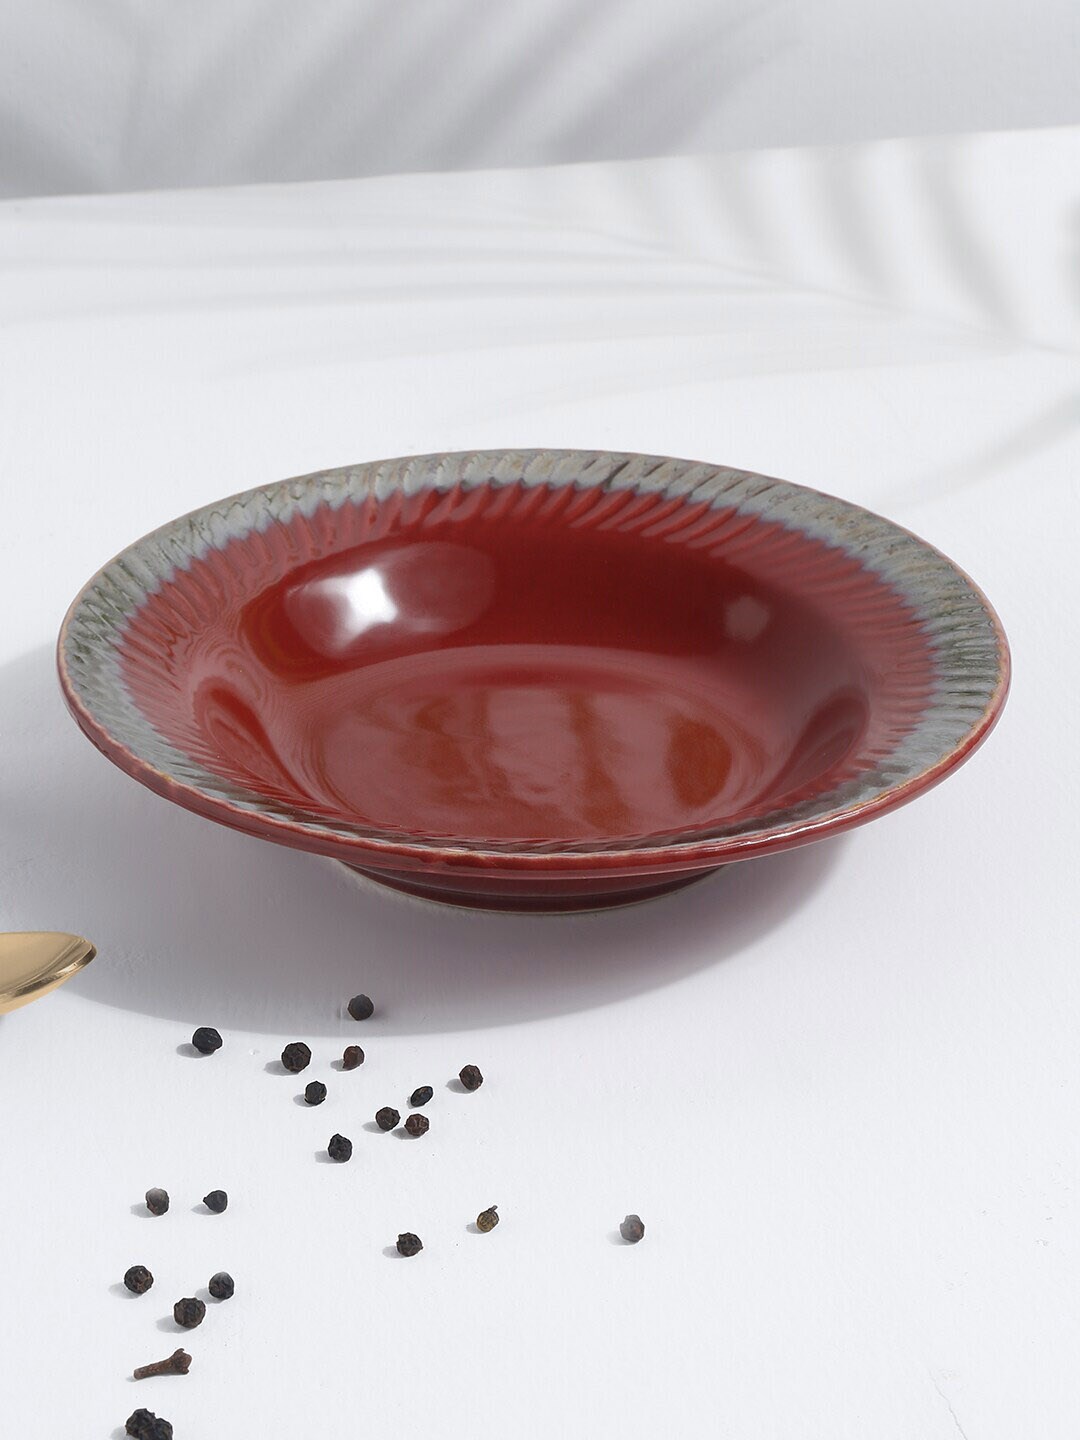 EK BY EKTA KAPOOR Maroon Textured Glazed Ceramic Food Platter Price in India